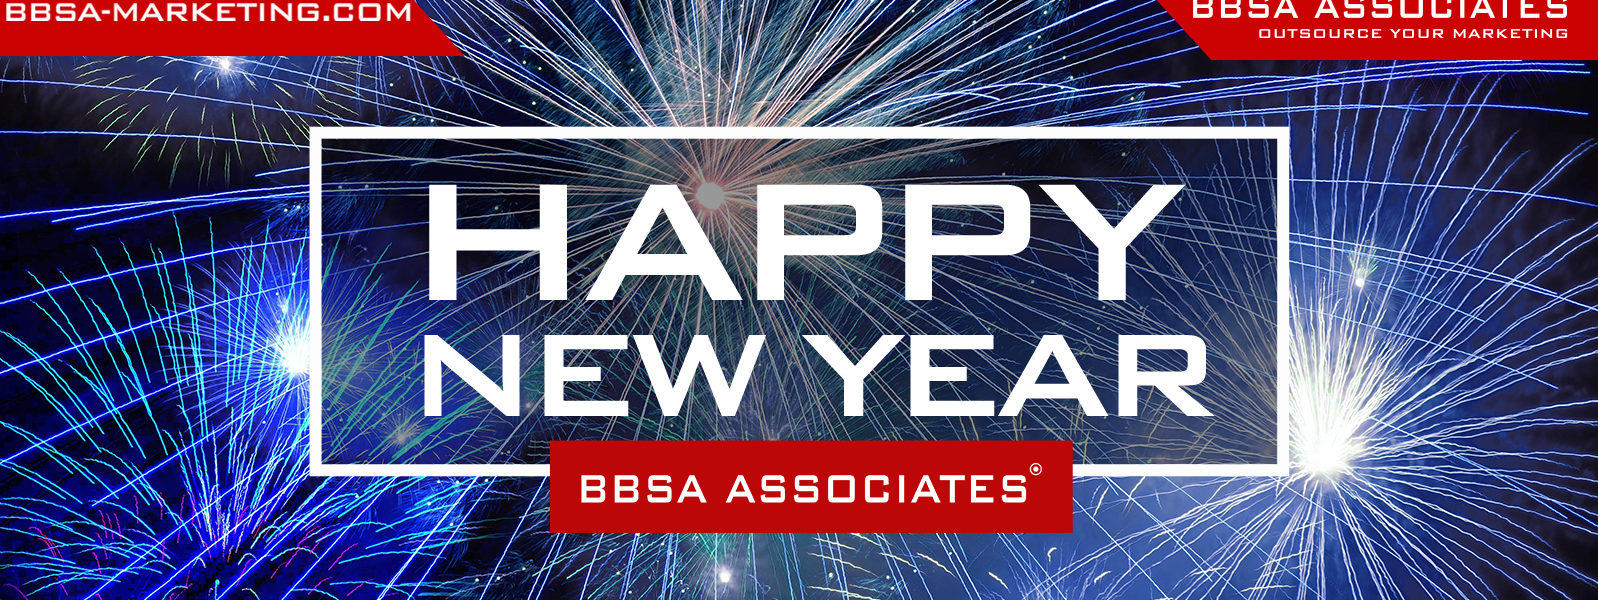 BBSA Happy New Year 2019